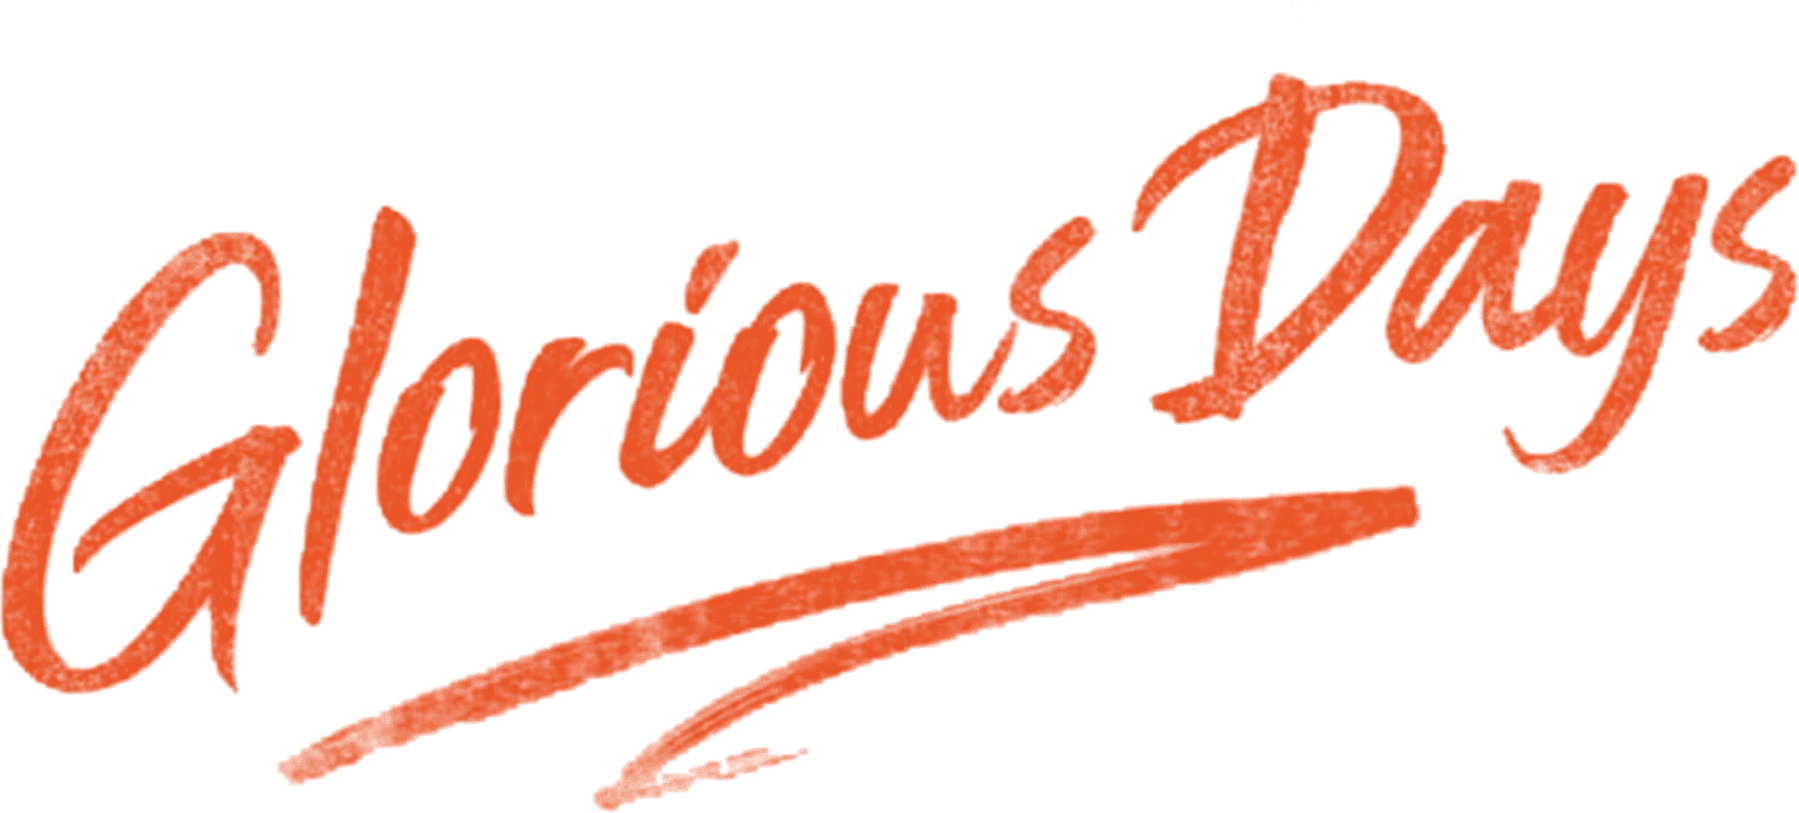 Glorious Days logo